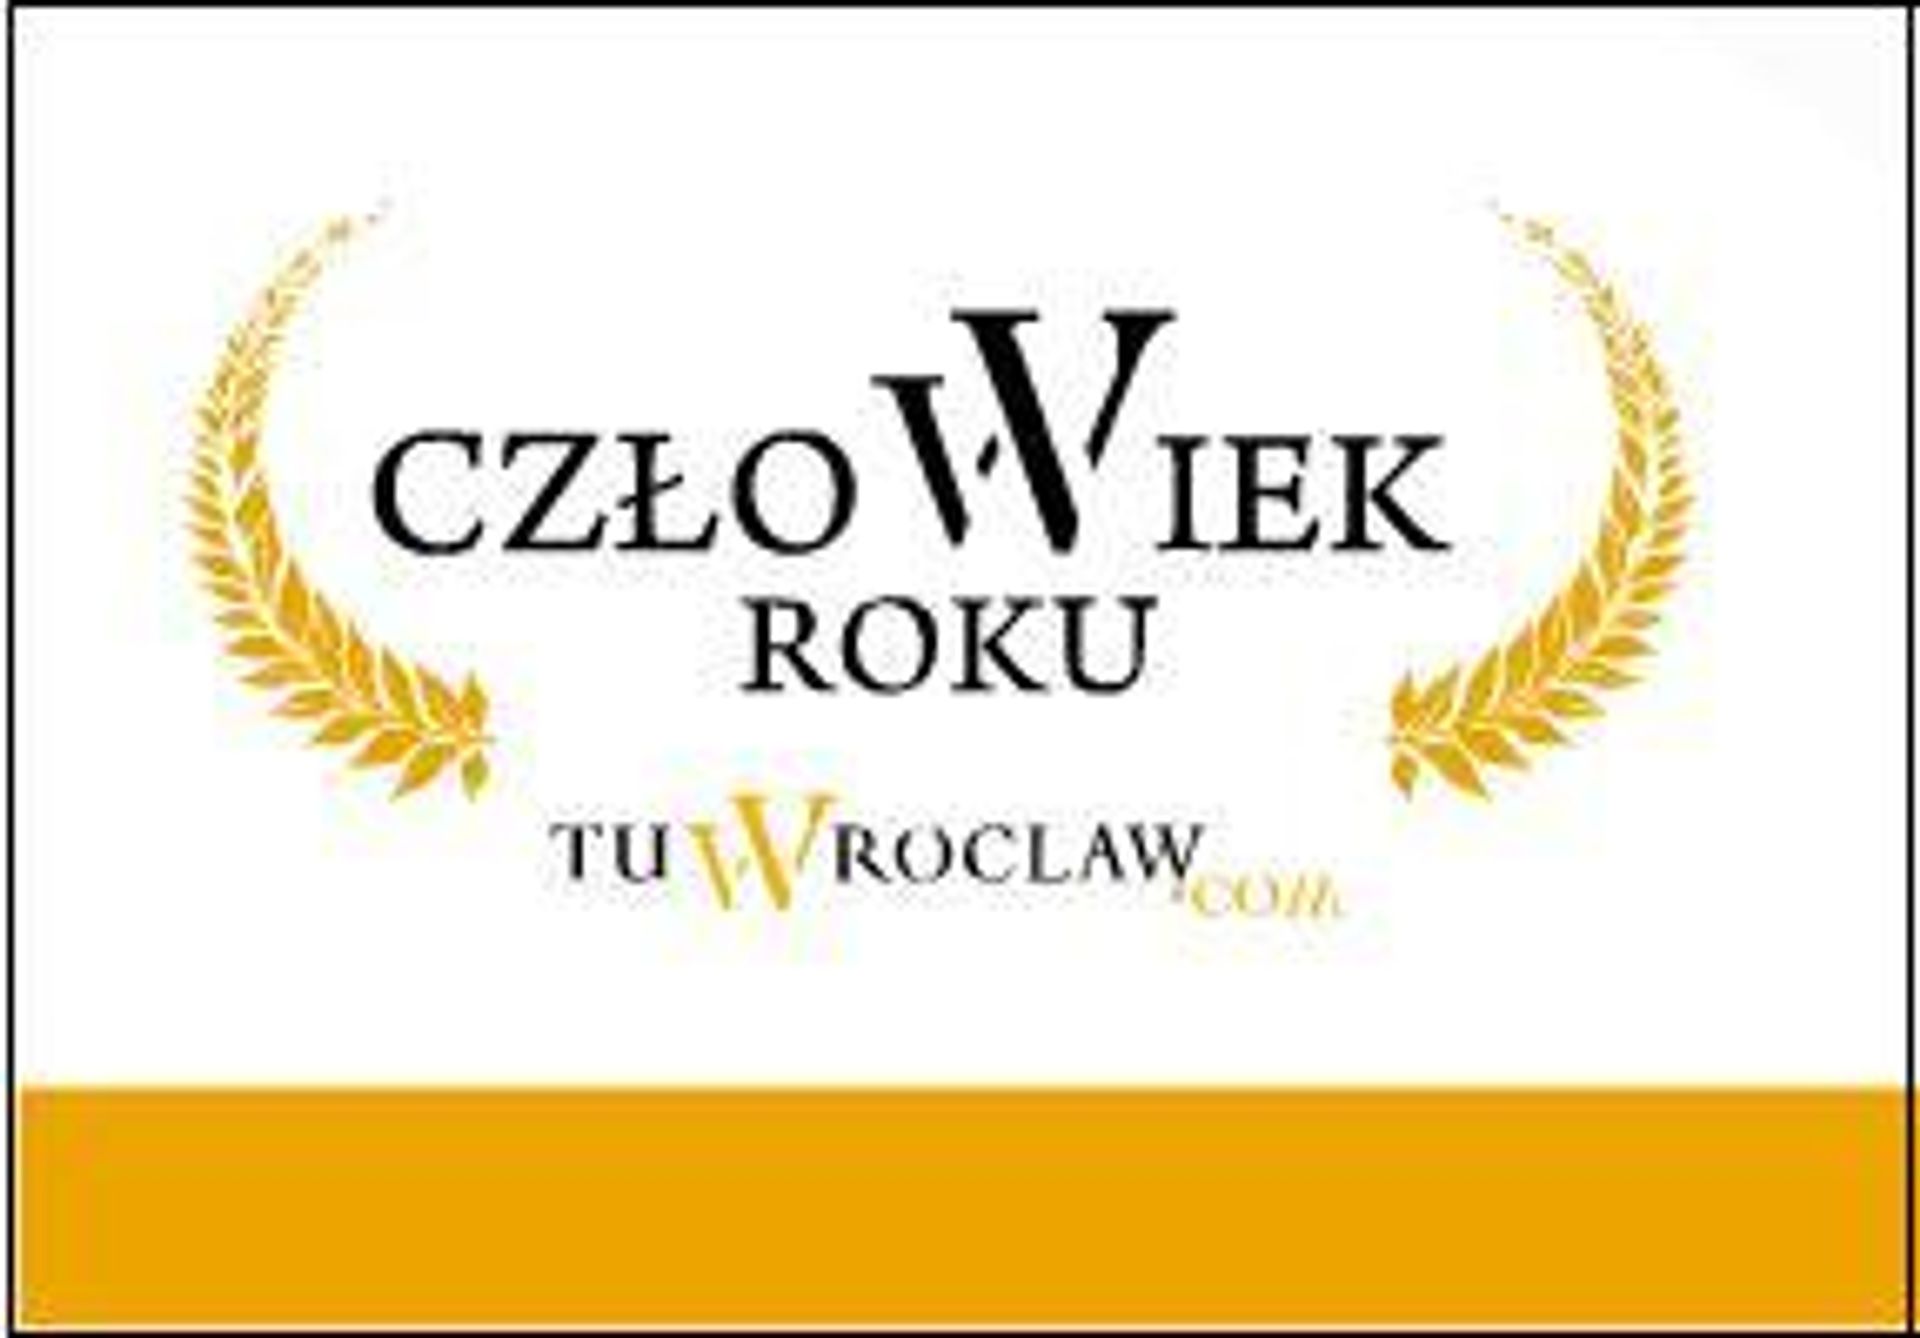  Człowiek Roku 2011 tuWrocław.com